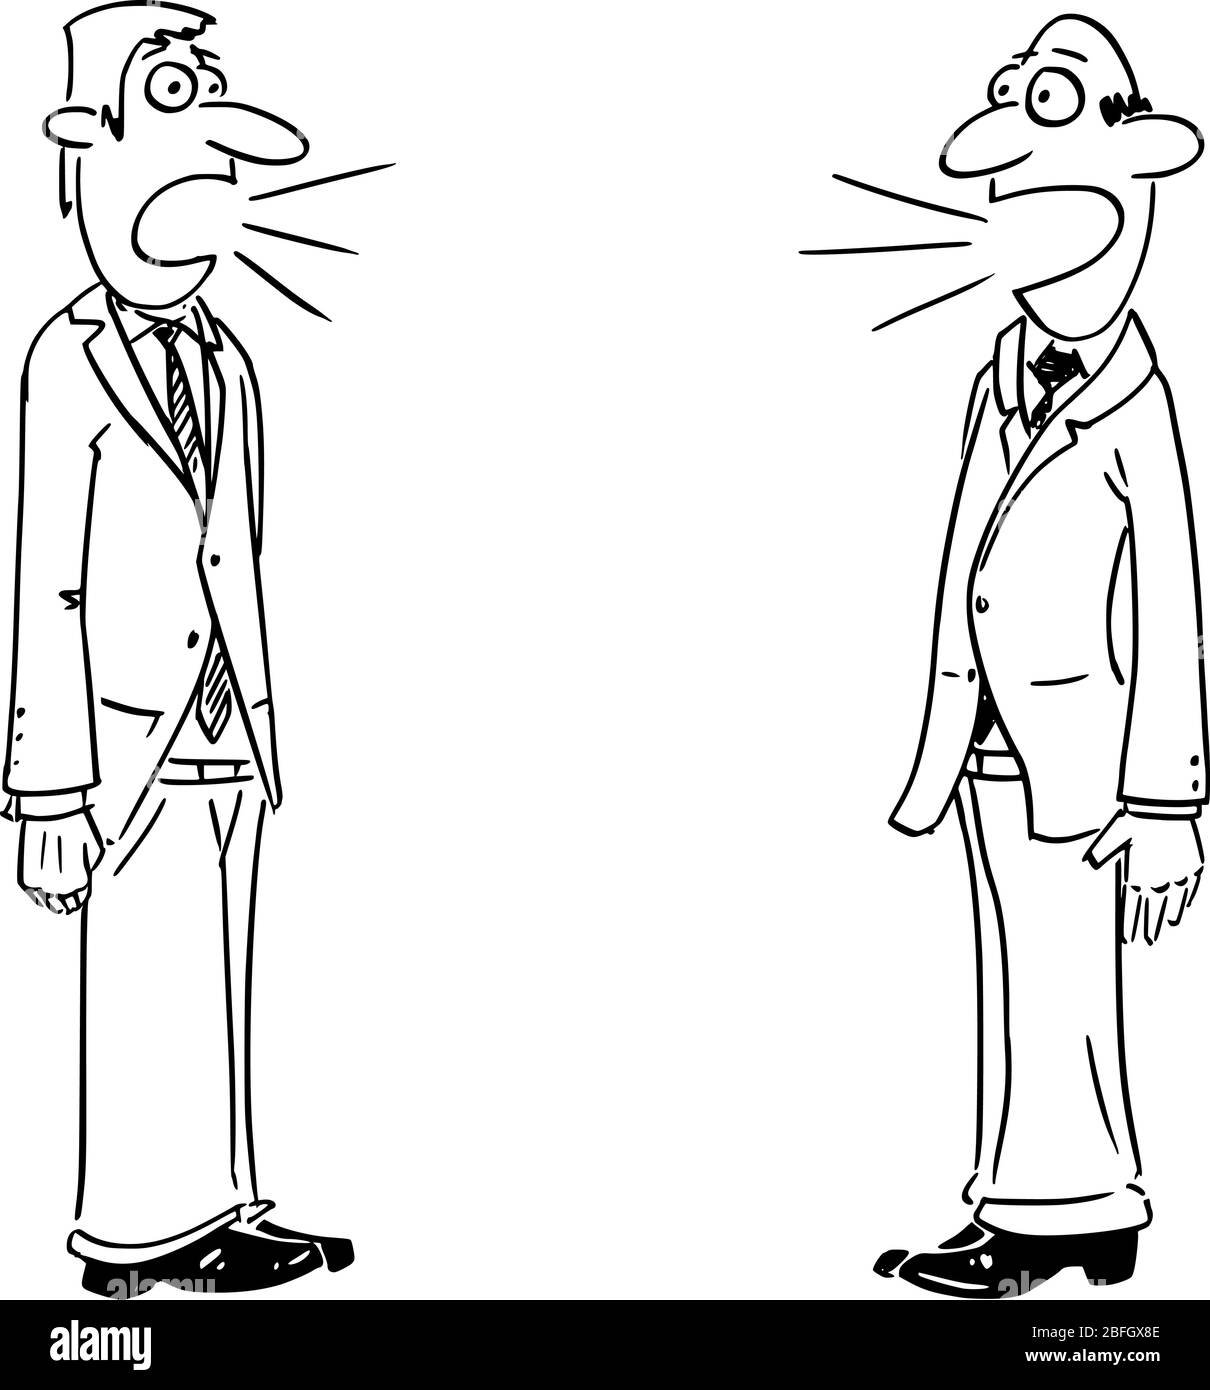 Vettore divertente fumetto disegno di due uomini d'affari o di uomini che parlano. Concetto di discussione o comunicazione. Illustrazione Vettoriale